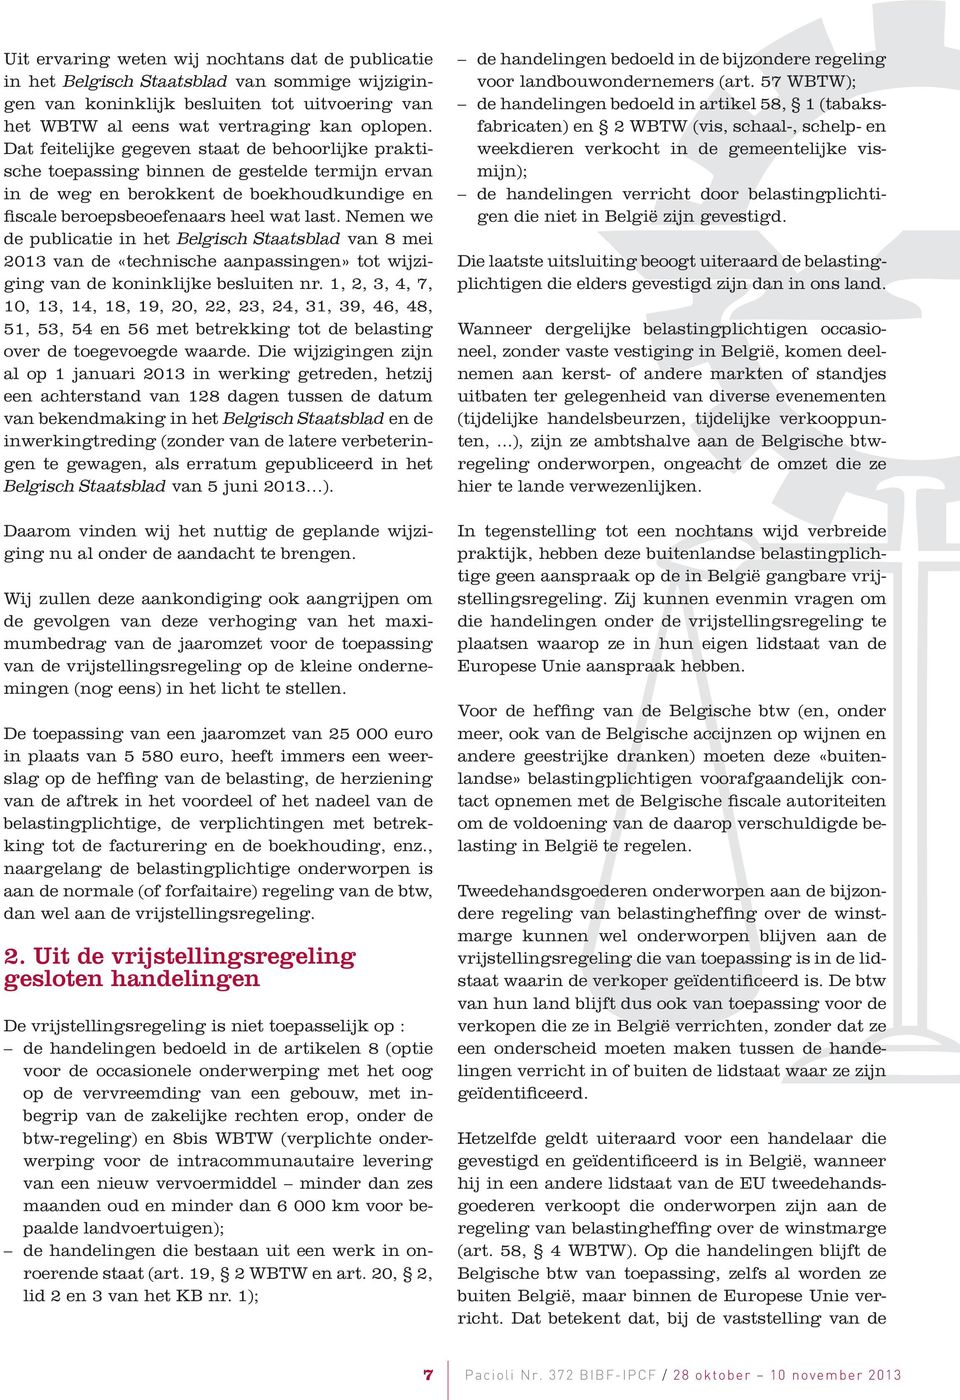 Nemen we de publicatie in het Belgisch Staatsblad van 8 mei 2013 van de «technische aanpassingen» tot wijziging van de koninklijke besluiten nr.